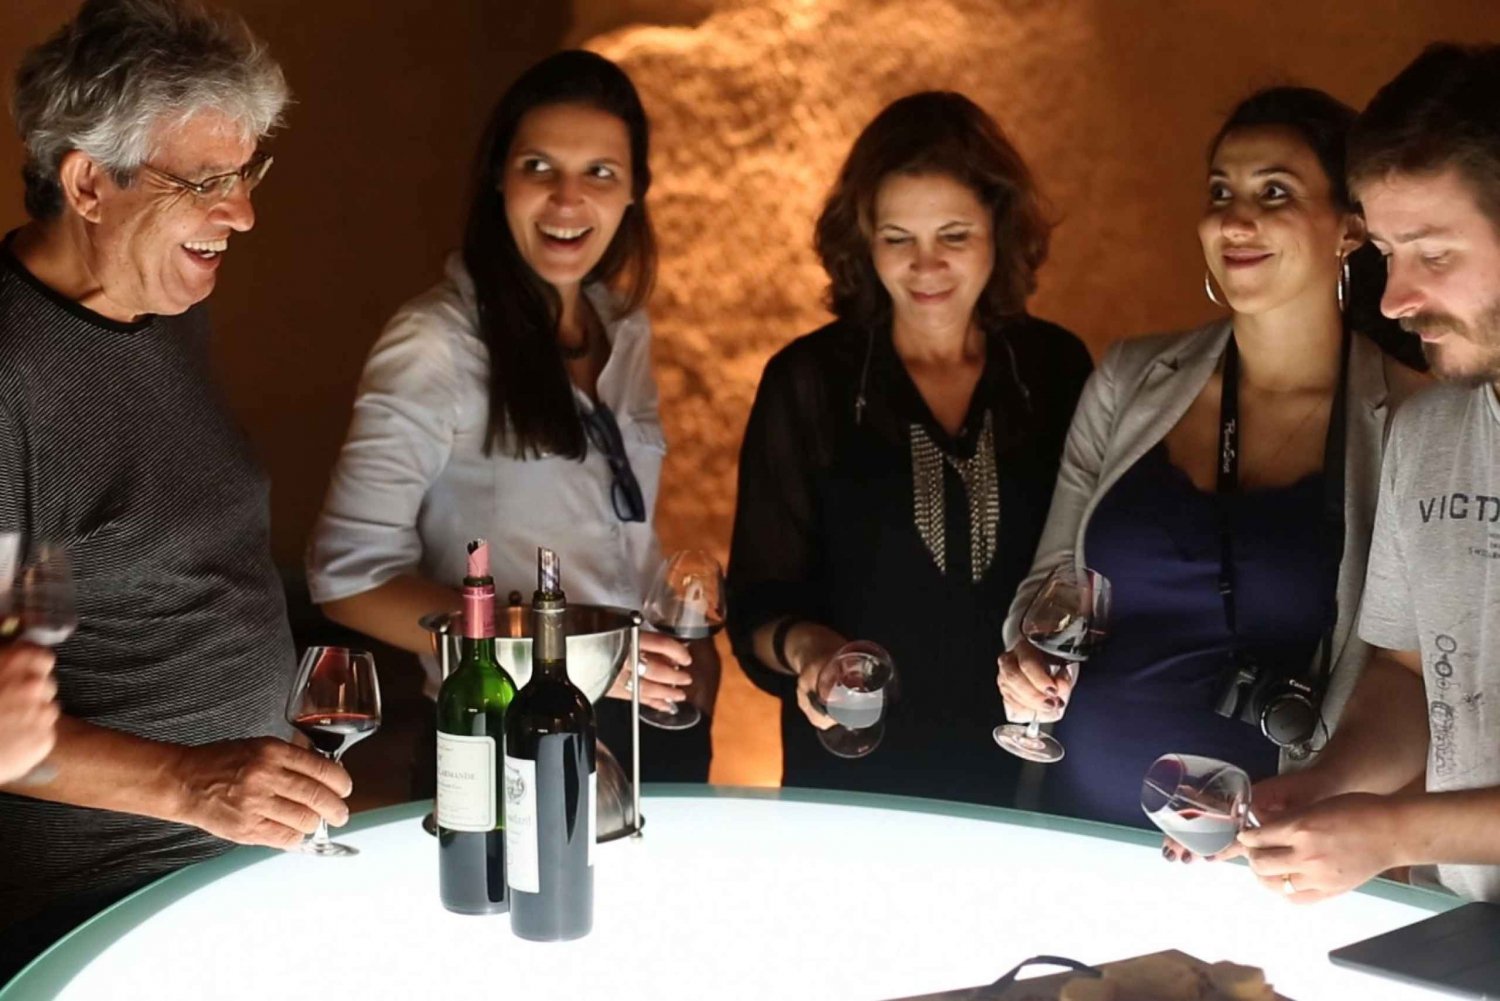 Bordeaux: Médoc & St-Emilion Wine Regions Tour with Tastings